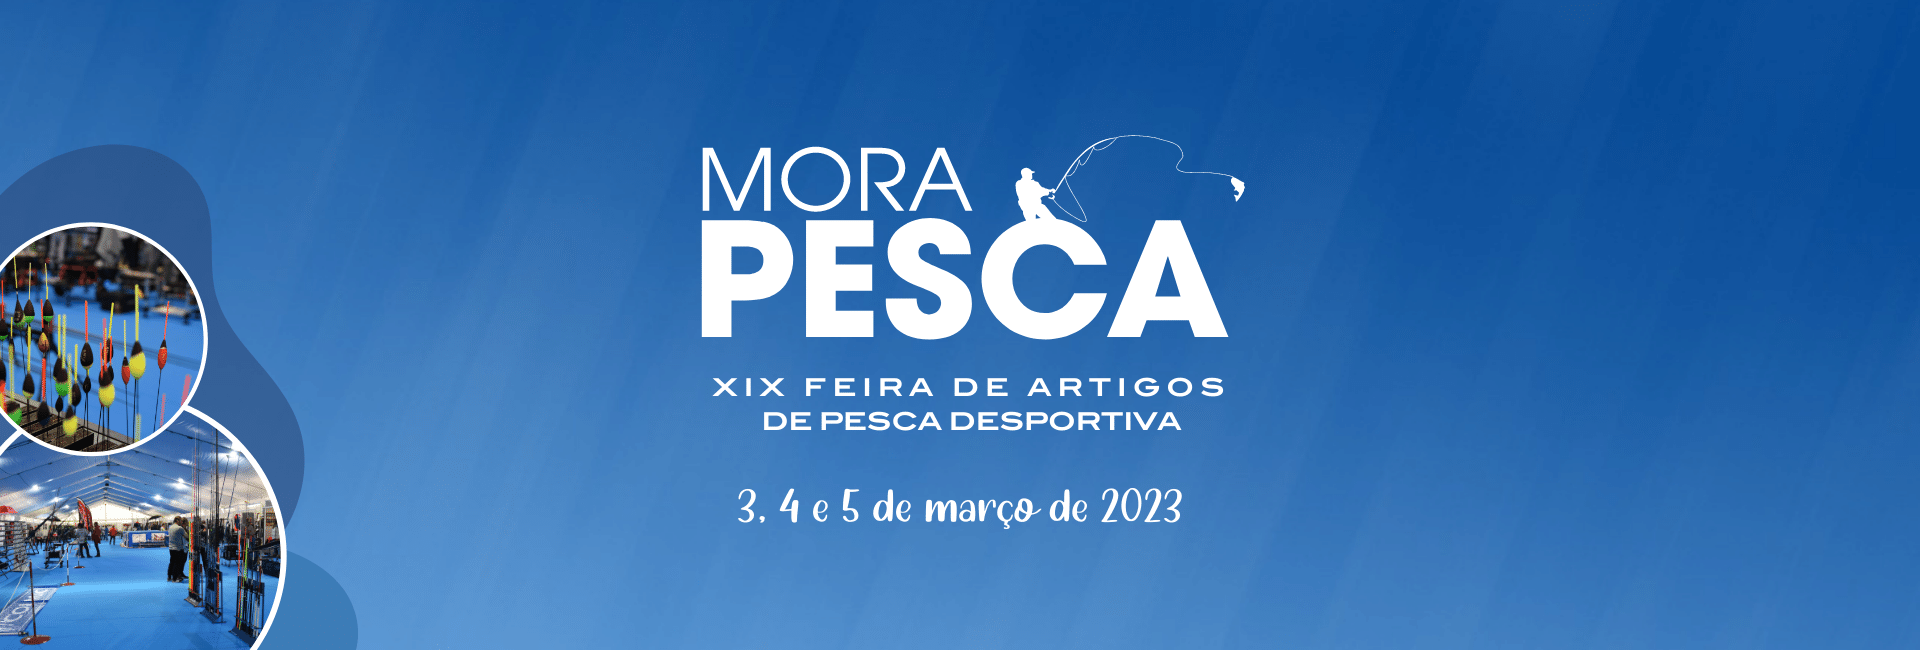 Morapesca realiza-se em março de 2023